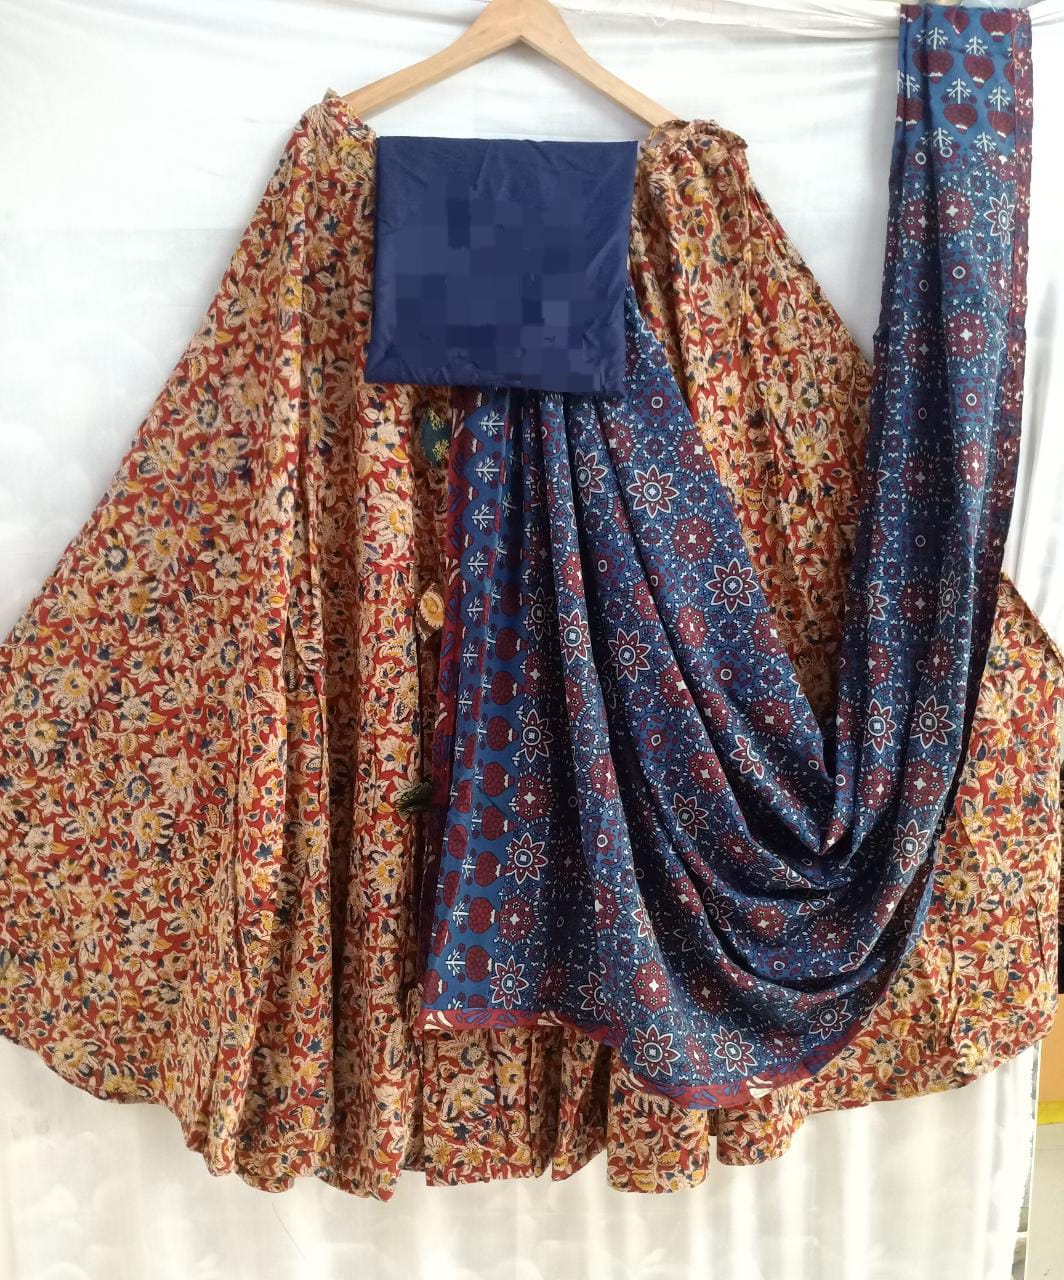 Kalamkari skirt blouse piece with cotton dupatta set